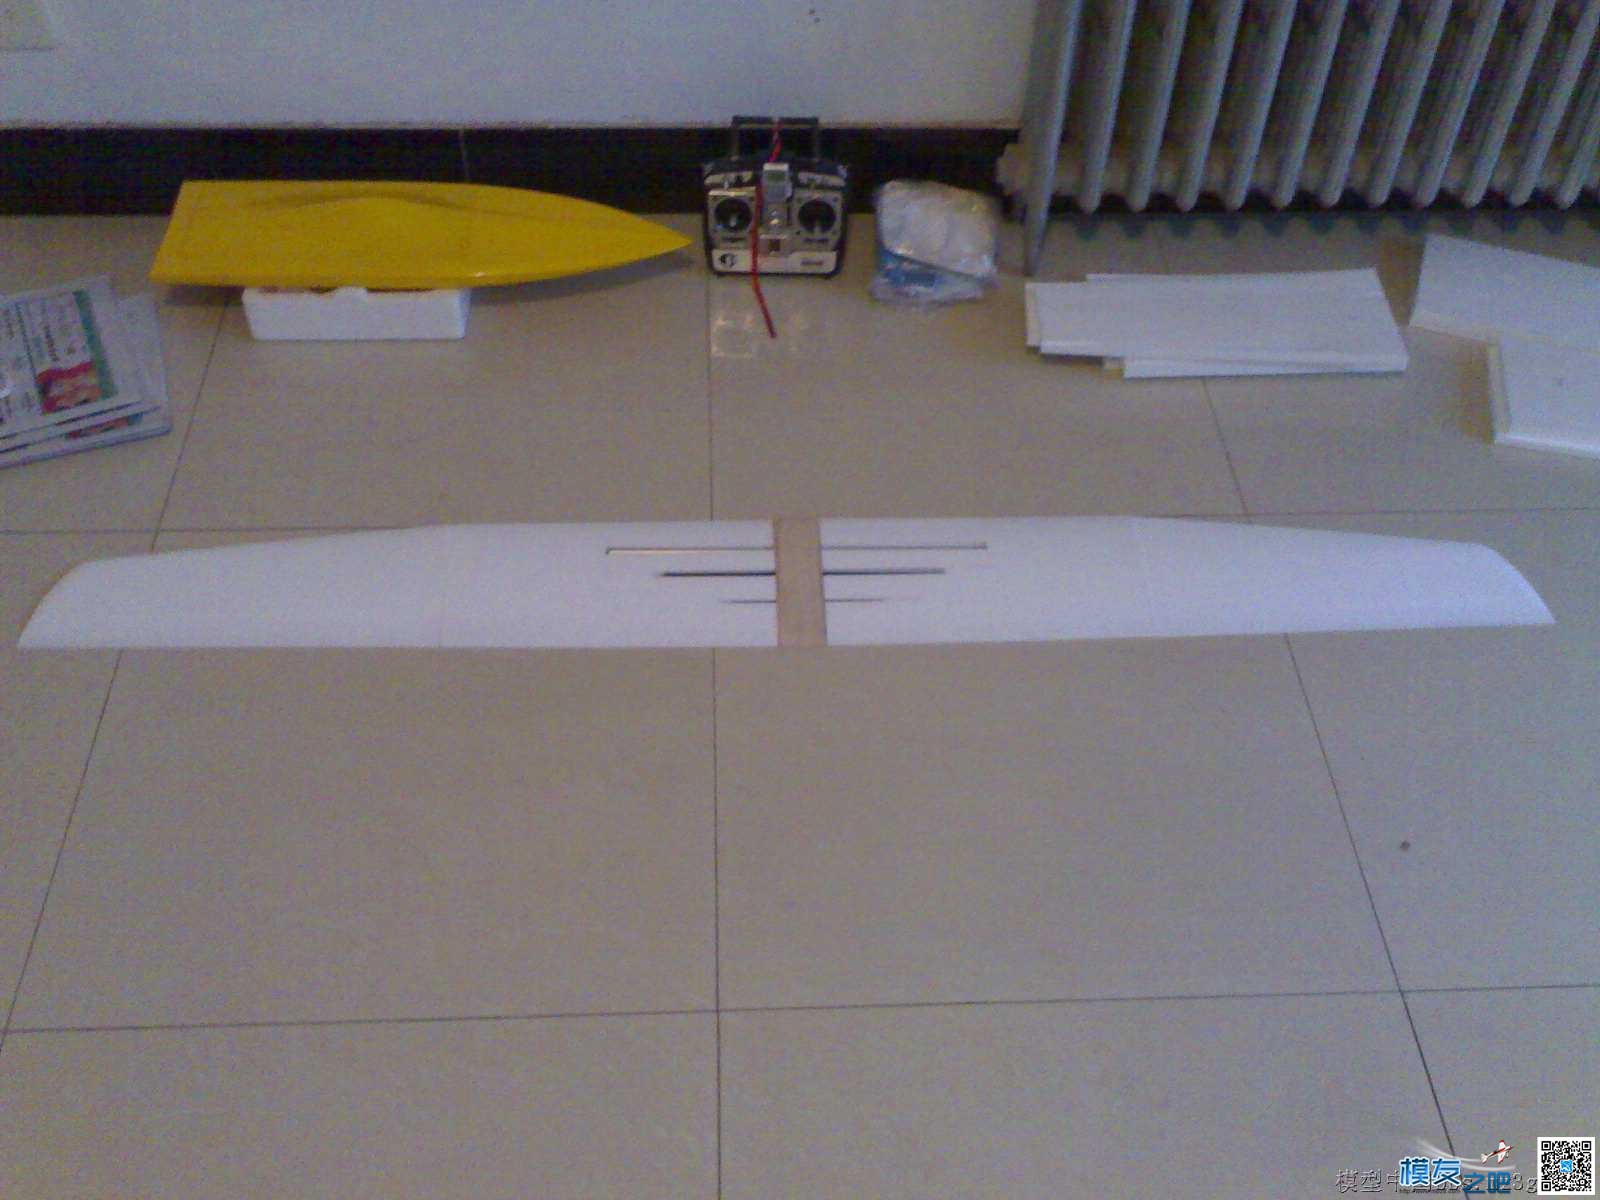 1.5米无动力山坡滑翔机制作过程 无动力滑翔机,滑翔机怎么做 作者:仇池侠 2741 